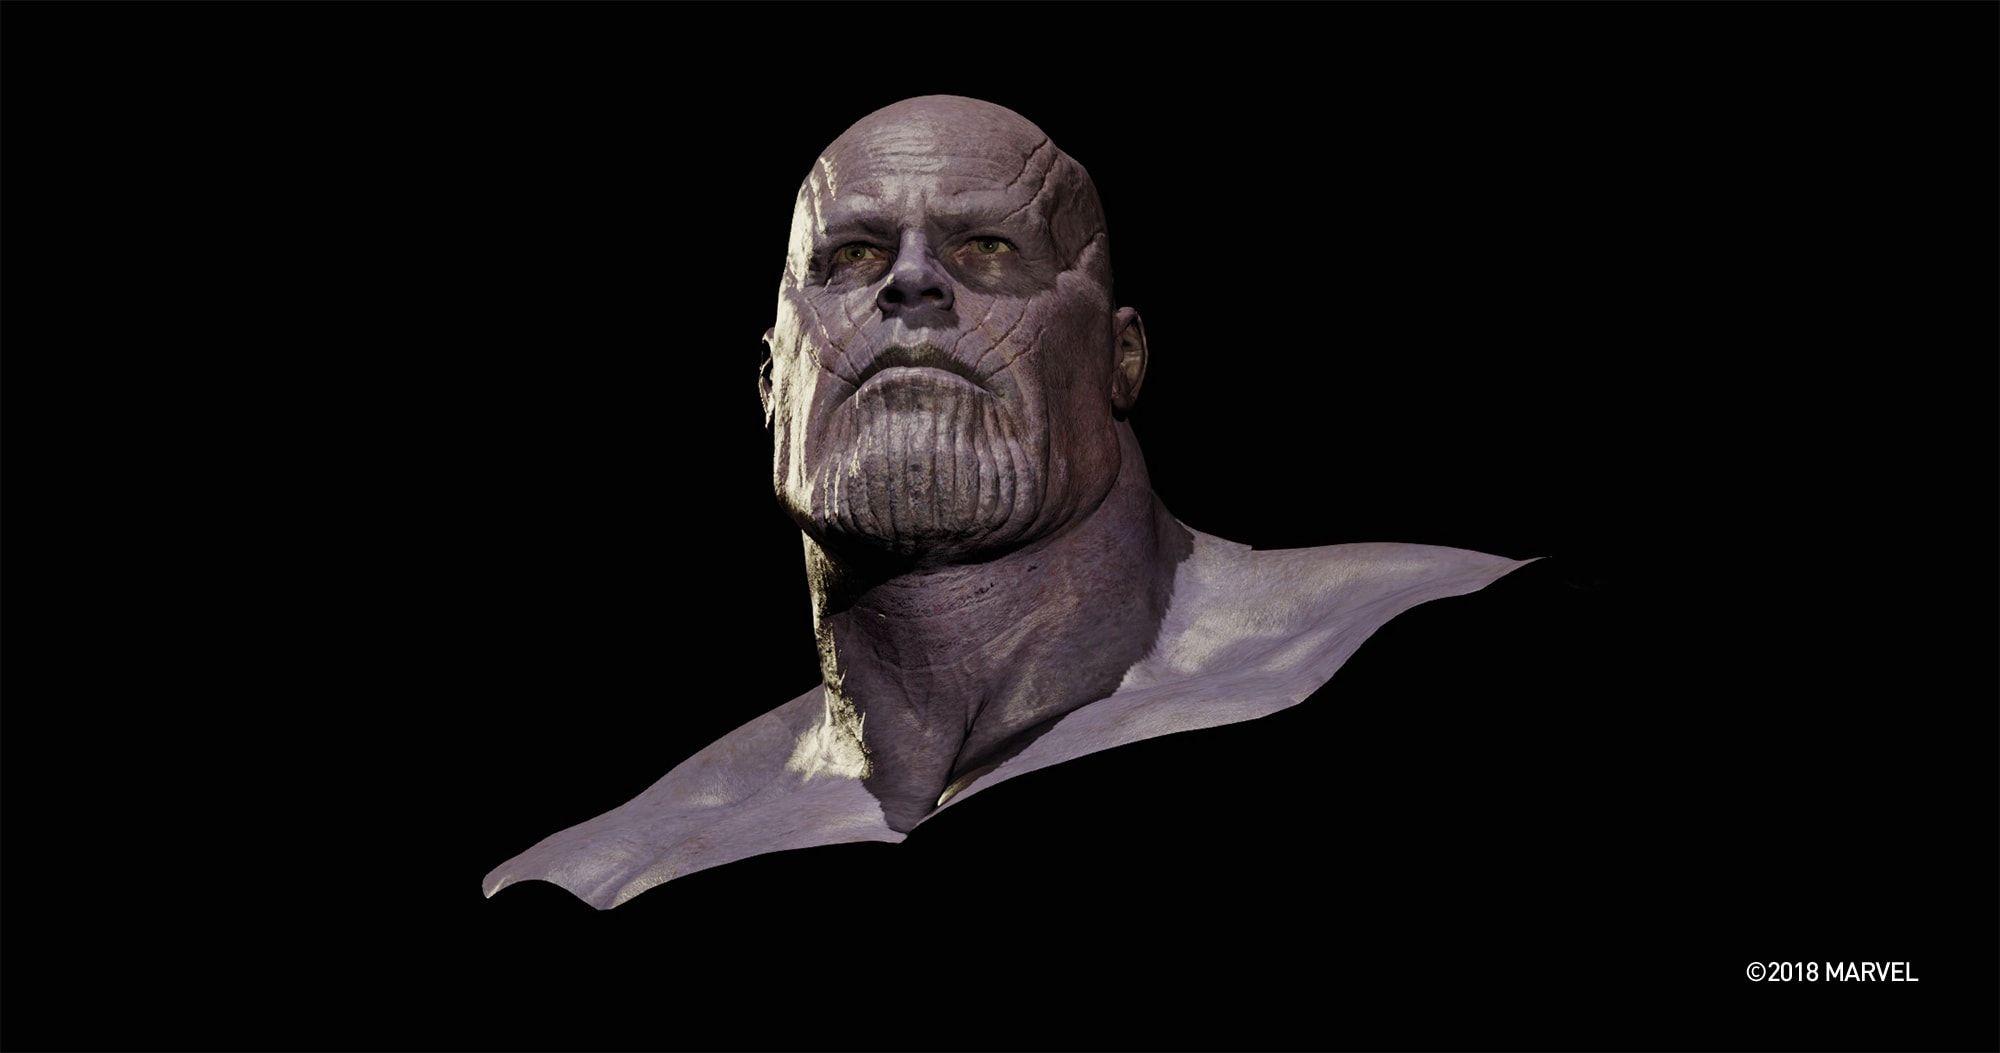 Thanos Face Logo - Making Thanos Face the Avengers